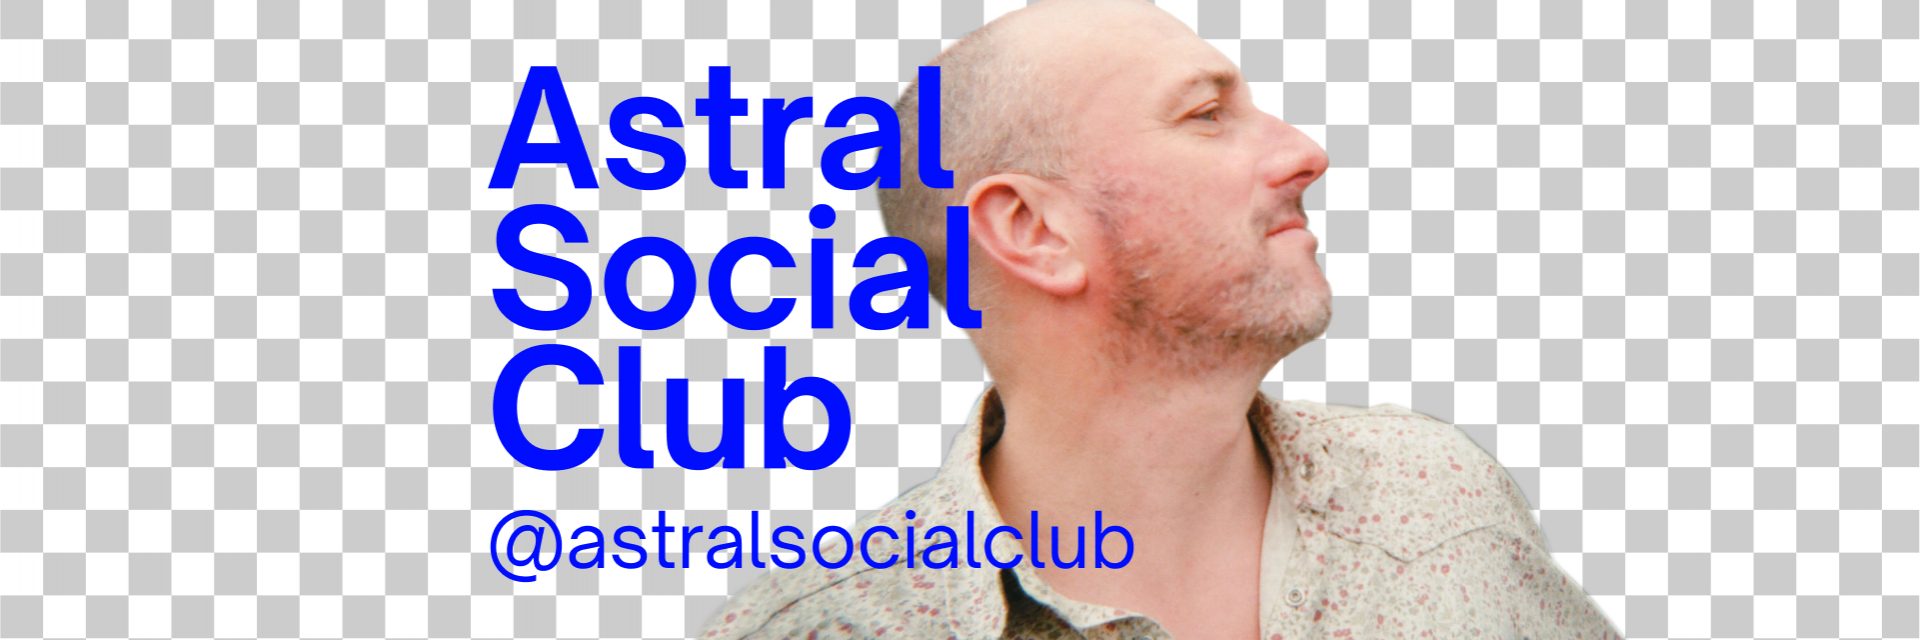 Mubert Artist: Astral Social Club — Mubert Blog